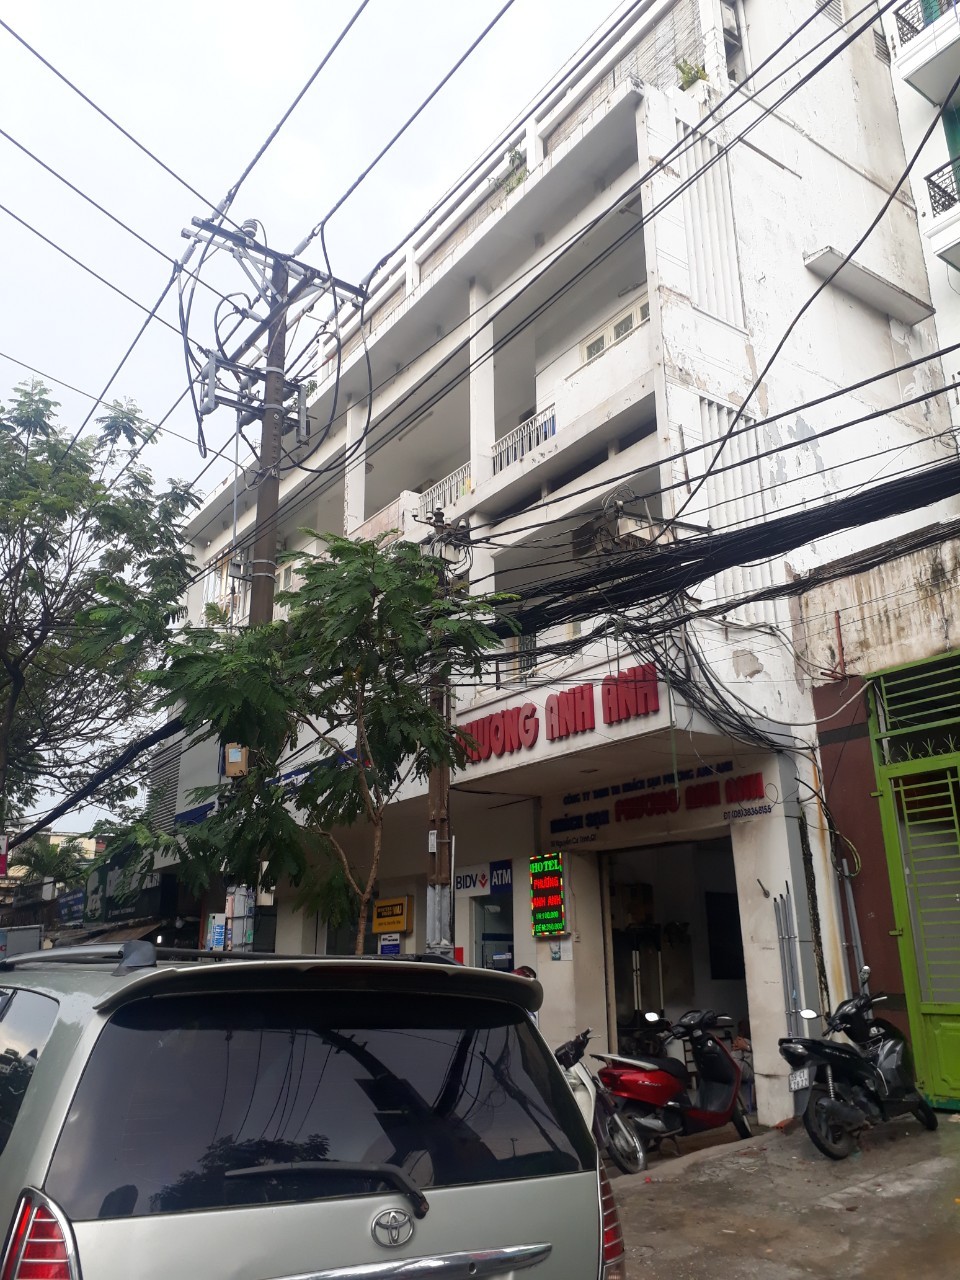 Bán nhà 5 lầu mặt tiền Nguyễn Thái Học Q1 4,2 x 16 giá 45 tỷ